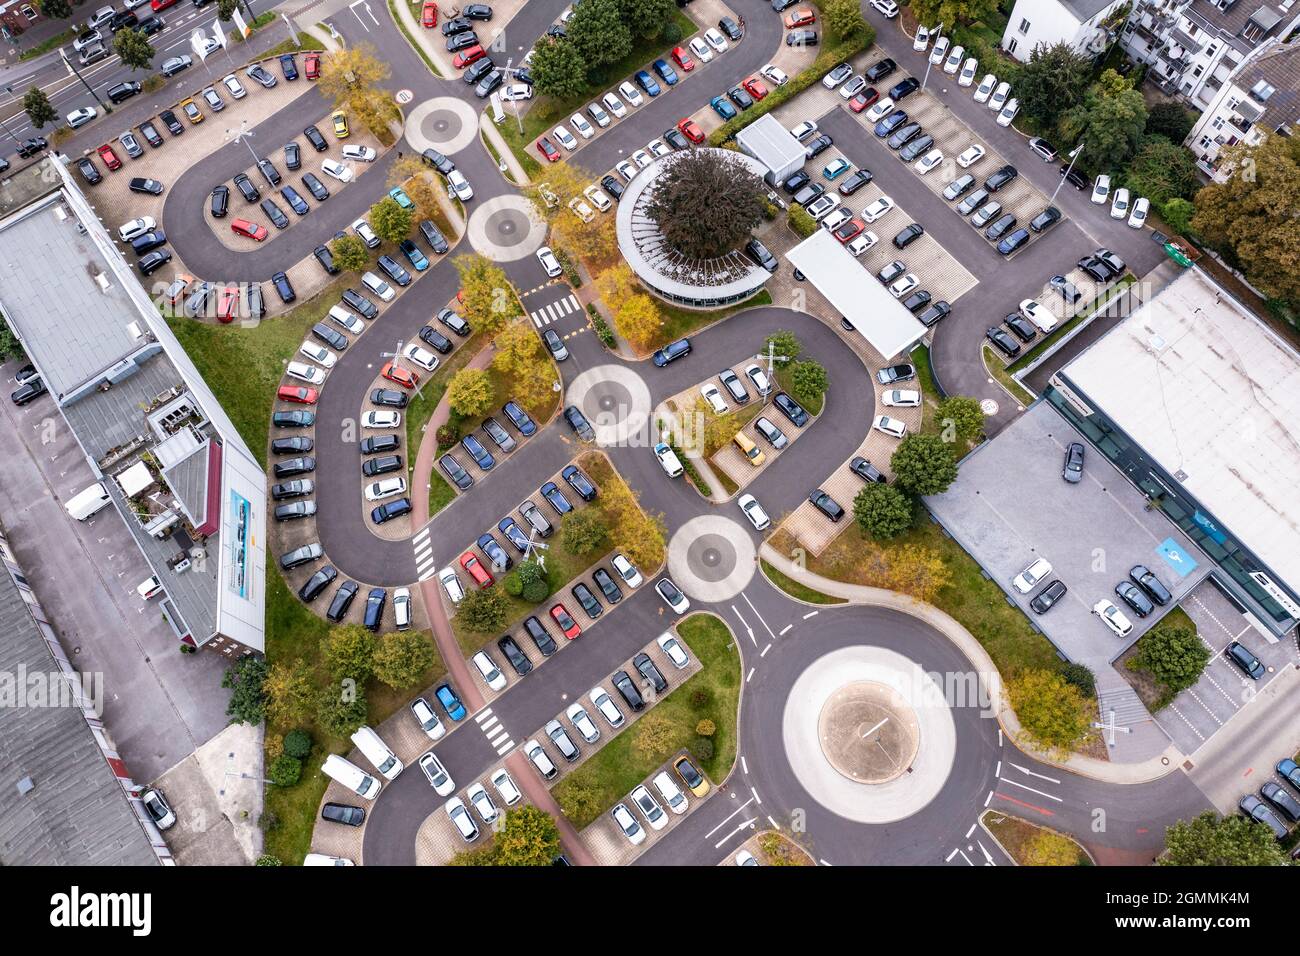 5 Kreisverkehre beim VW Autohaus an der Automeile am Höherweg in Düsseldorf. Aus der Luft gesehen ein kleines Kunstwerk mit den geparkten Autos. Stock Photo